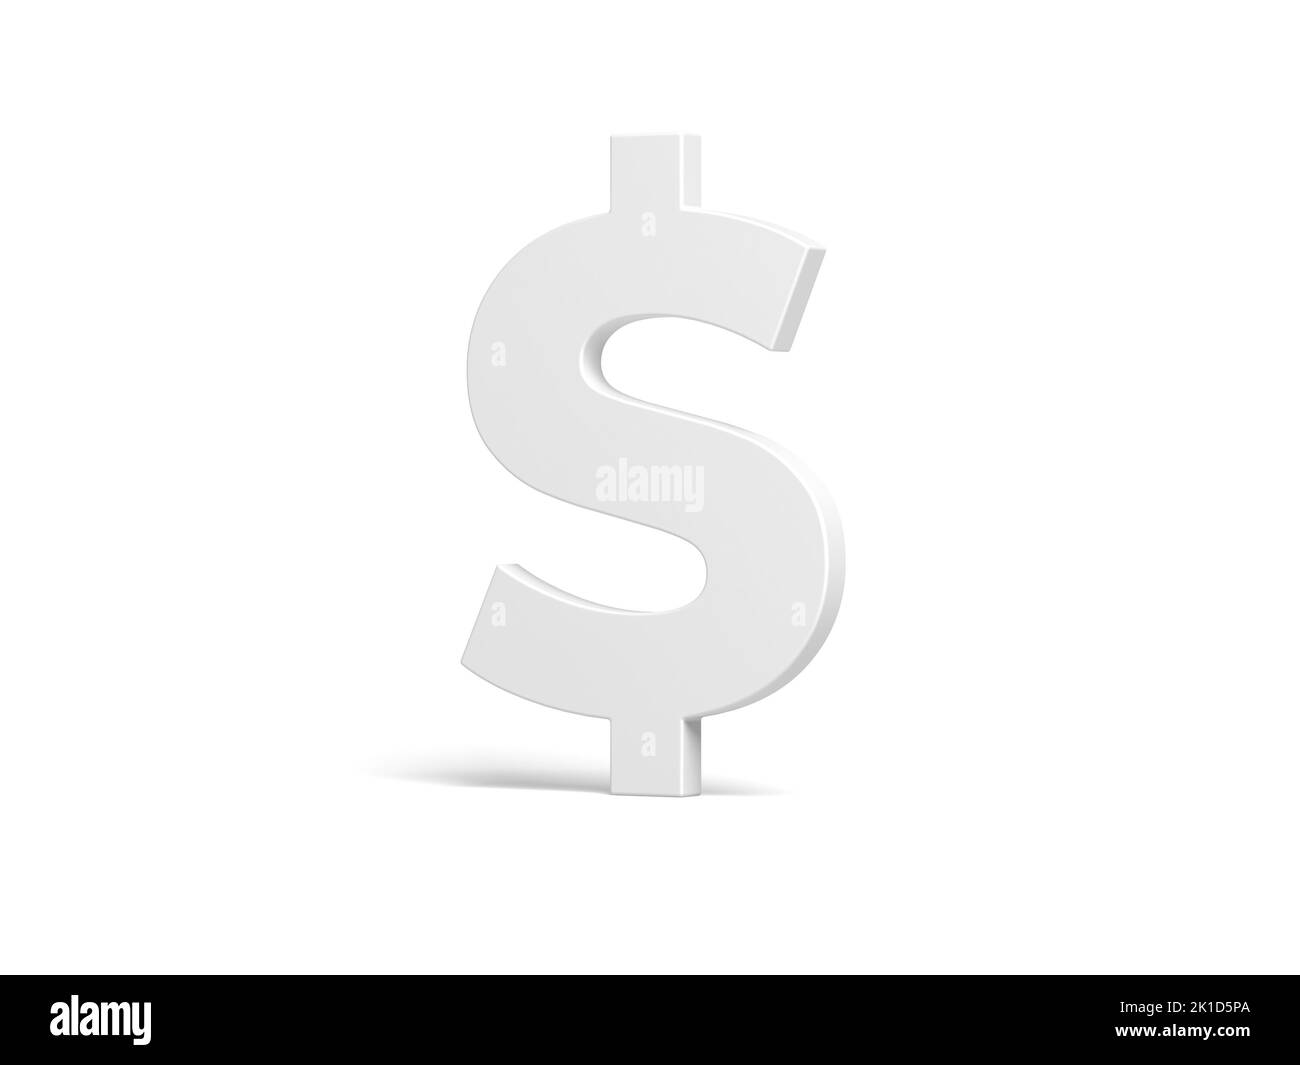 Dollar symbol isolated on white background. 3d illustration. Stock Photo